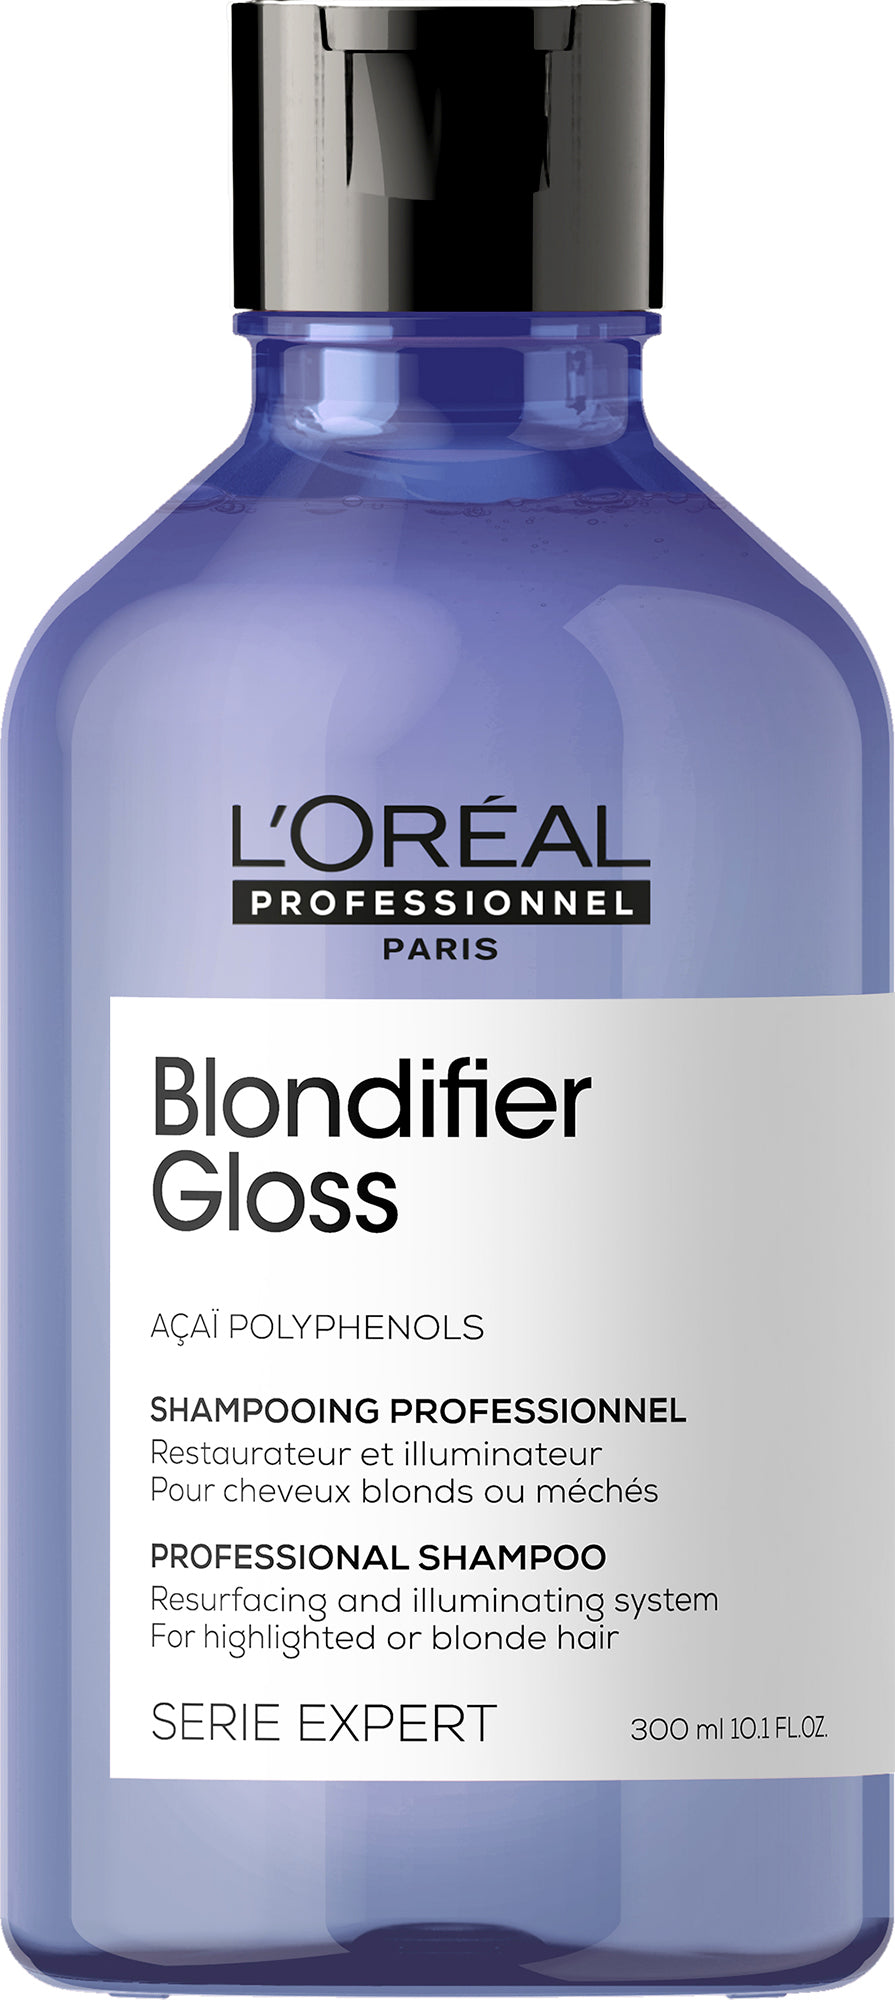 Sham LP Blondifier Gloss 300ml